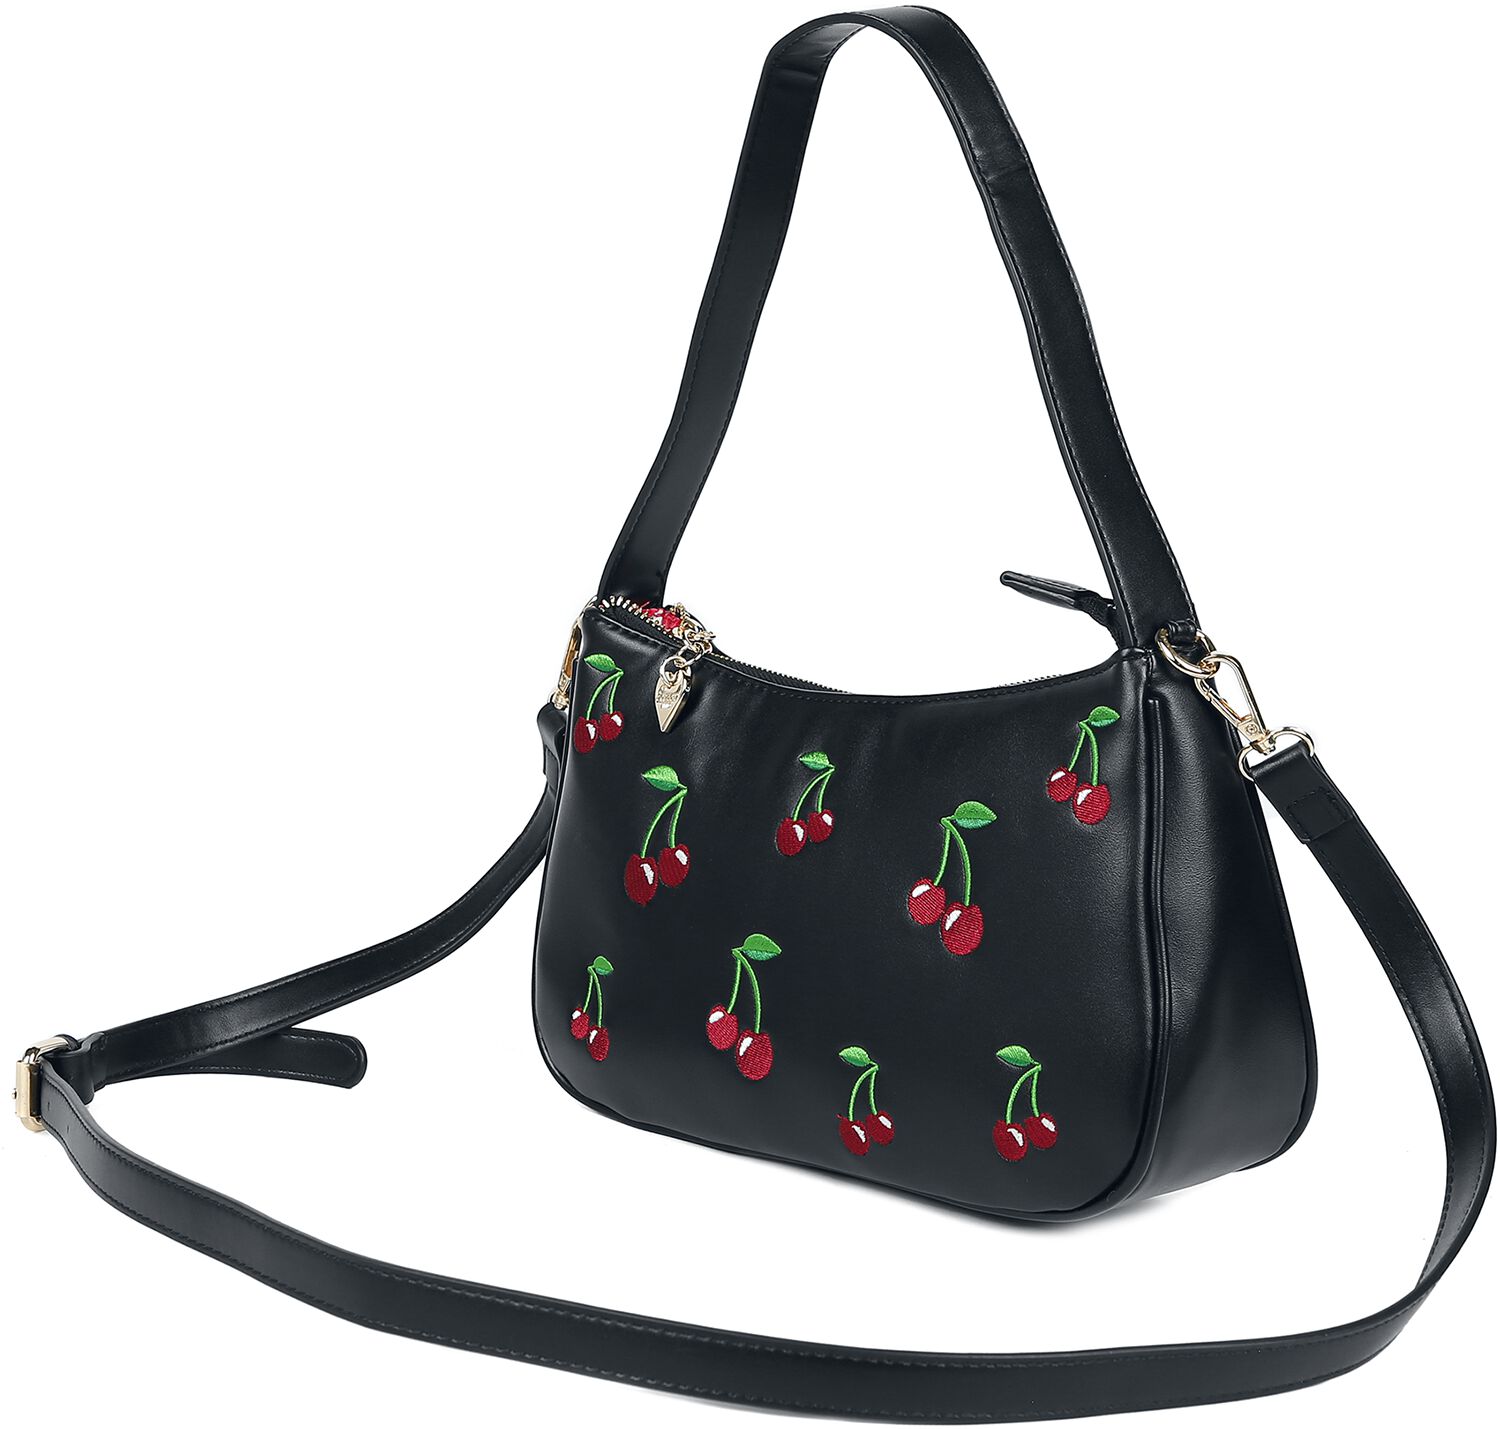 Banned Retro Wild Cherry Handtasche schwarz multicolor